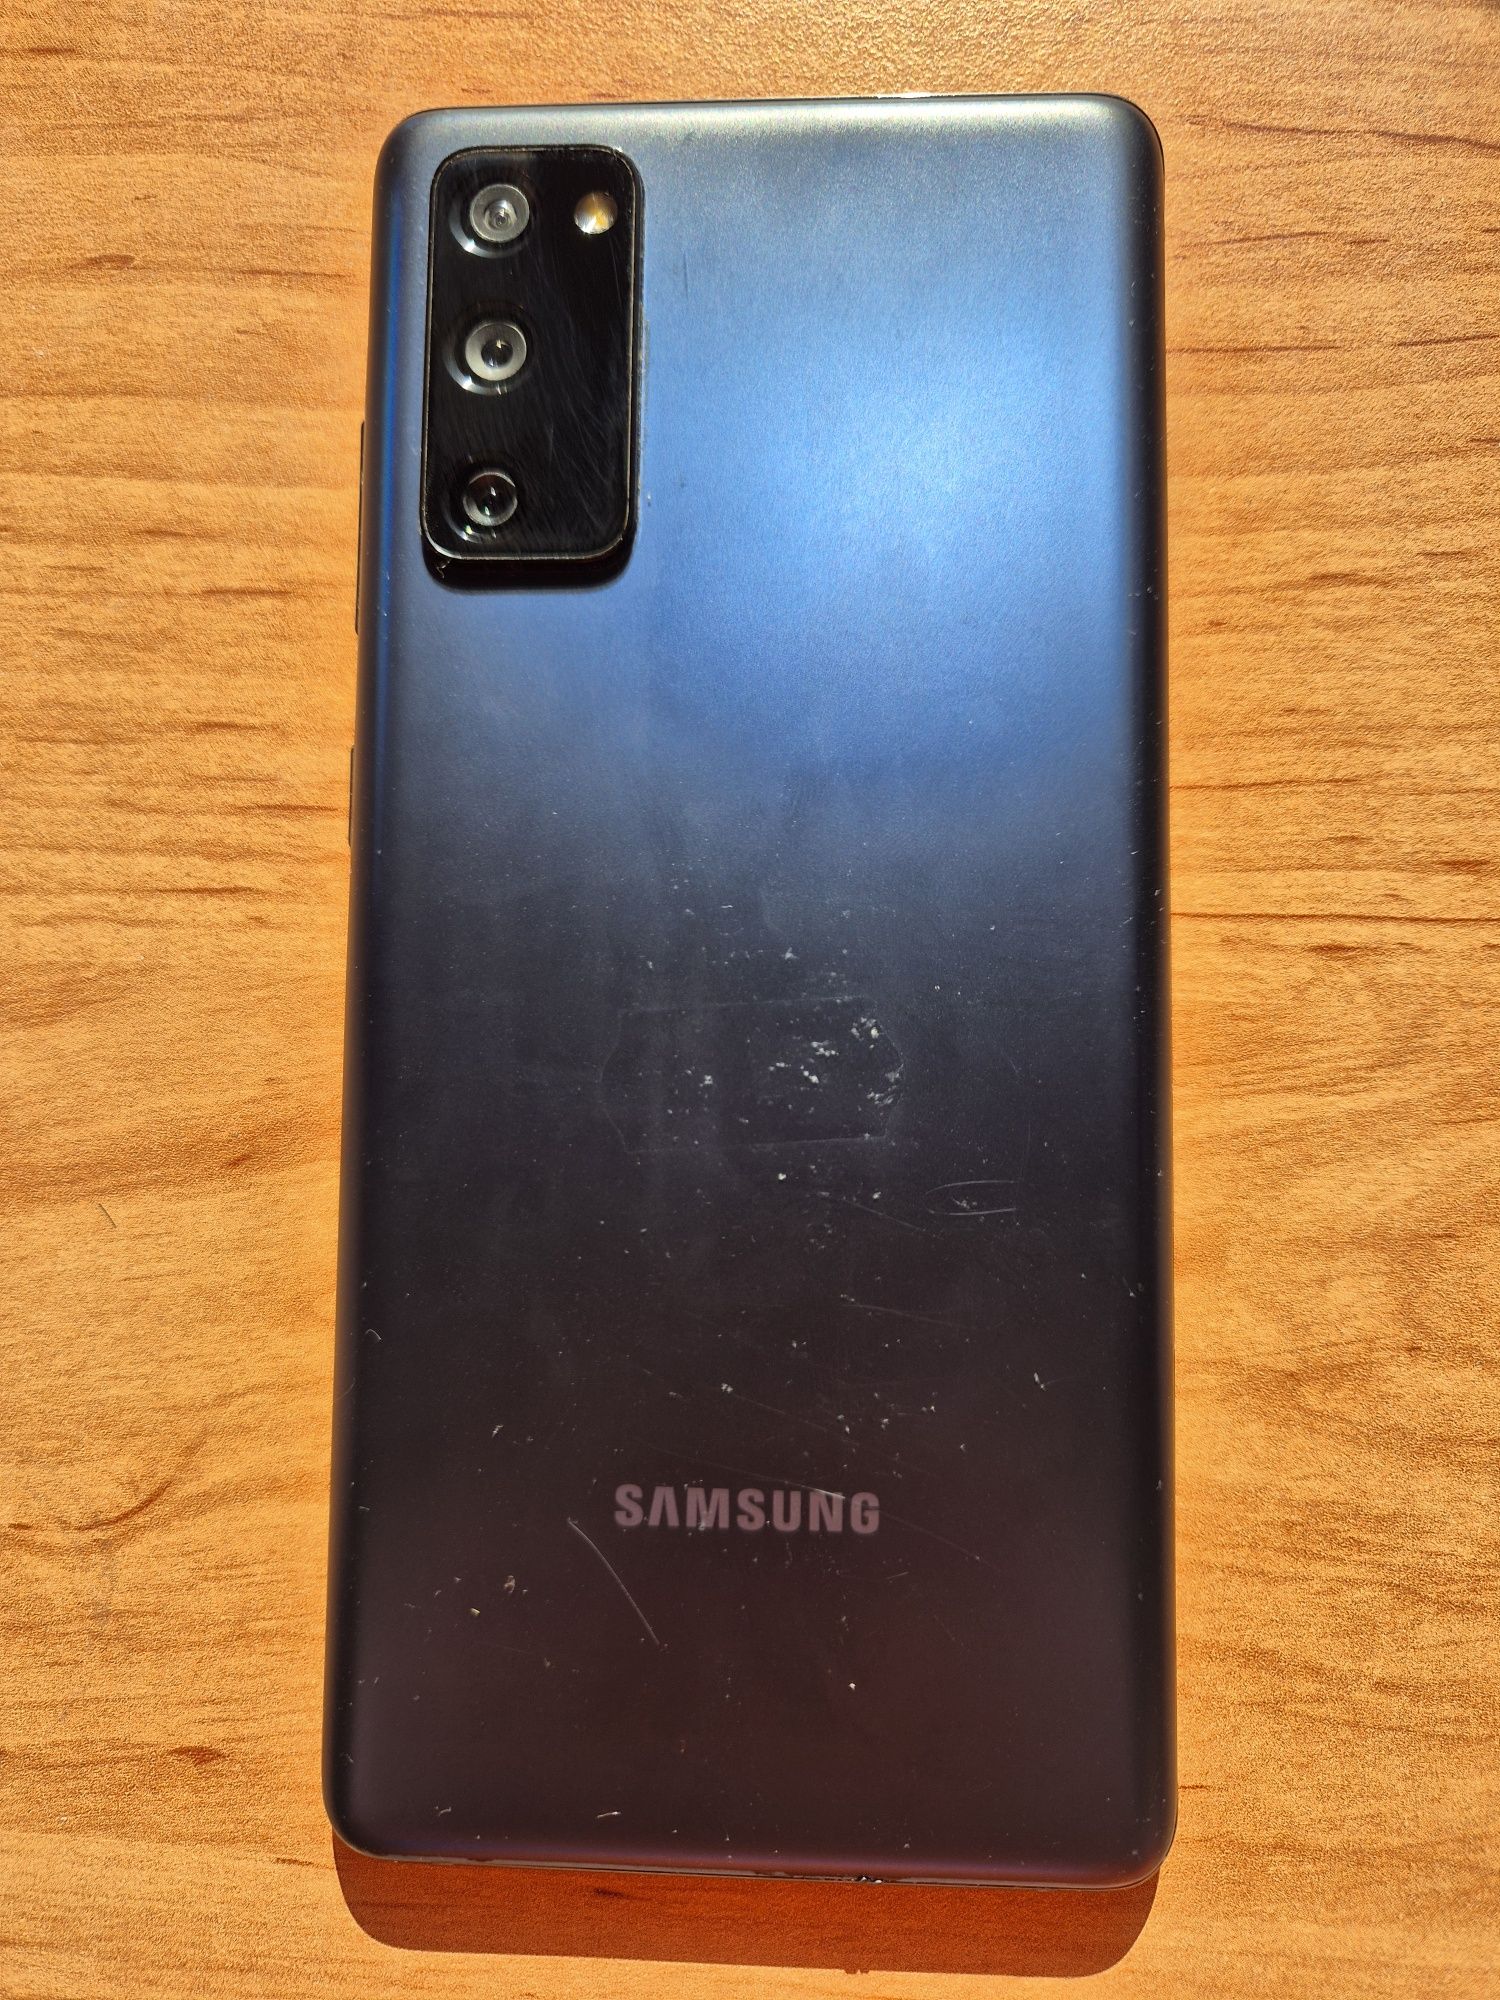 Samsung Galaxy S20 FE 5G 128 GB